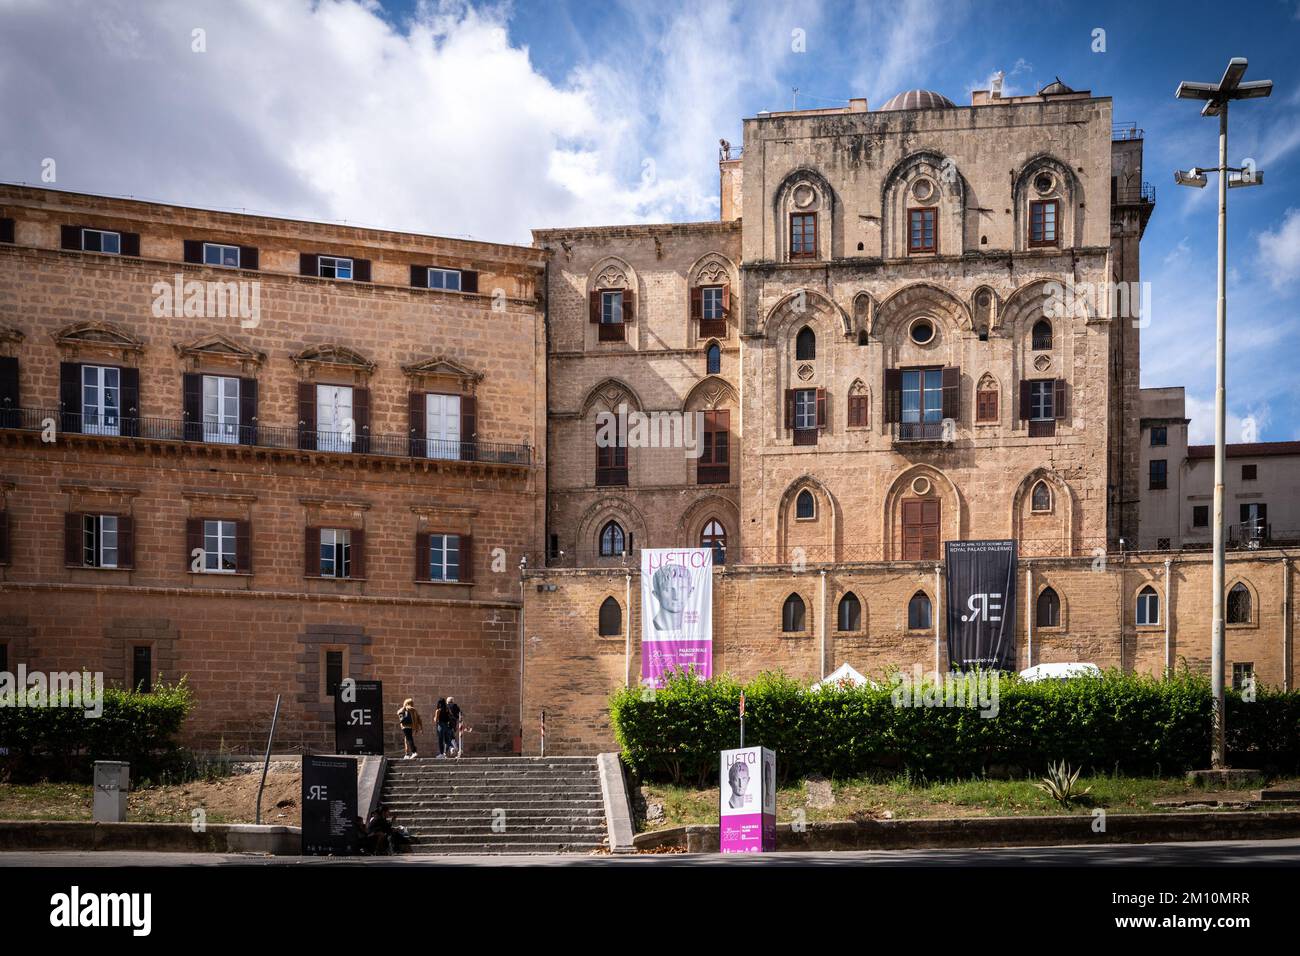 Der Königspalast, Palazzo dei Normanni, wurde von den Normannen als Ort genutzt, von dem aus die Region regiert wurde. Die Palatin-Kapelle befindet sich im Inneren. Palermo. Stockfoto